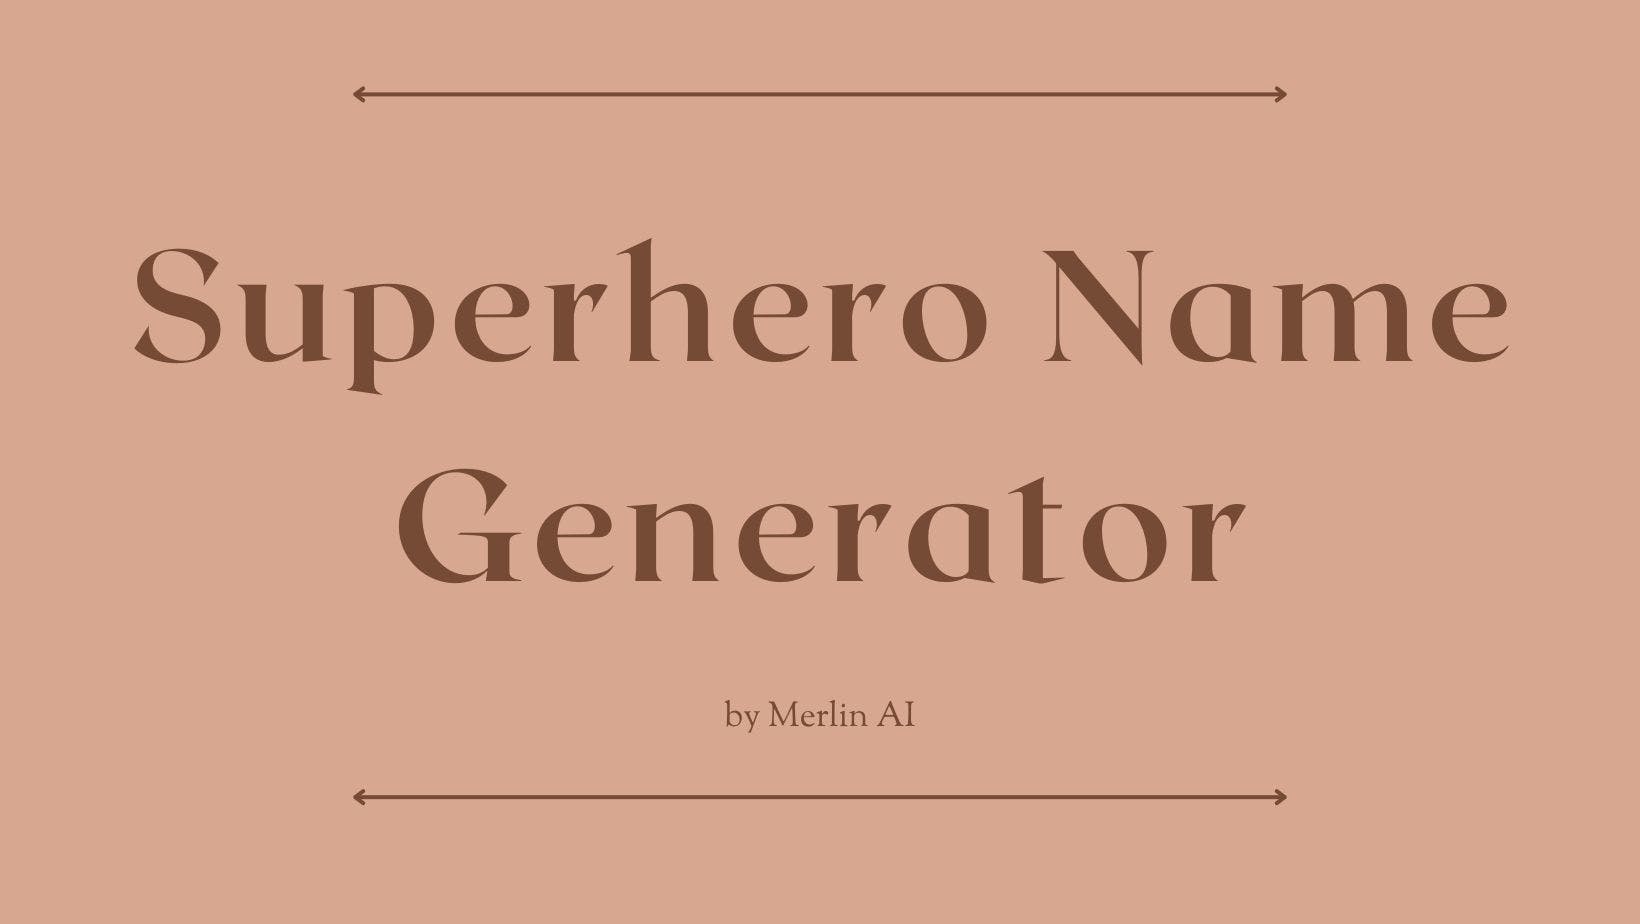 Cover Image for Generador gratuito de nombres de superhéroes de Merlin AI